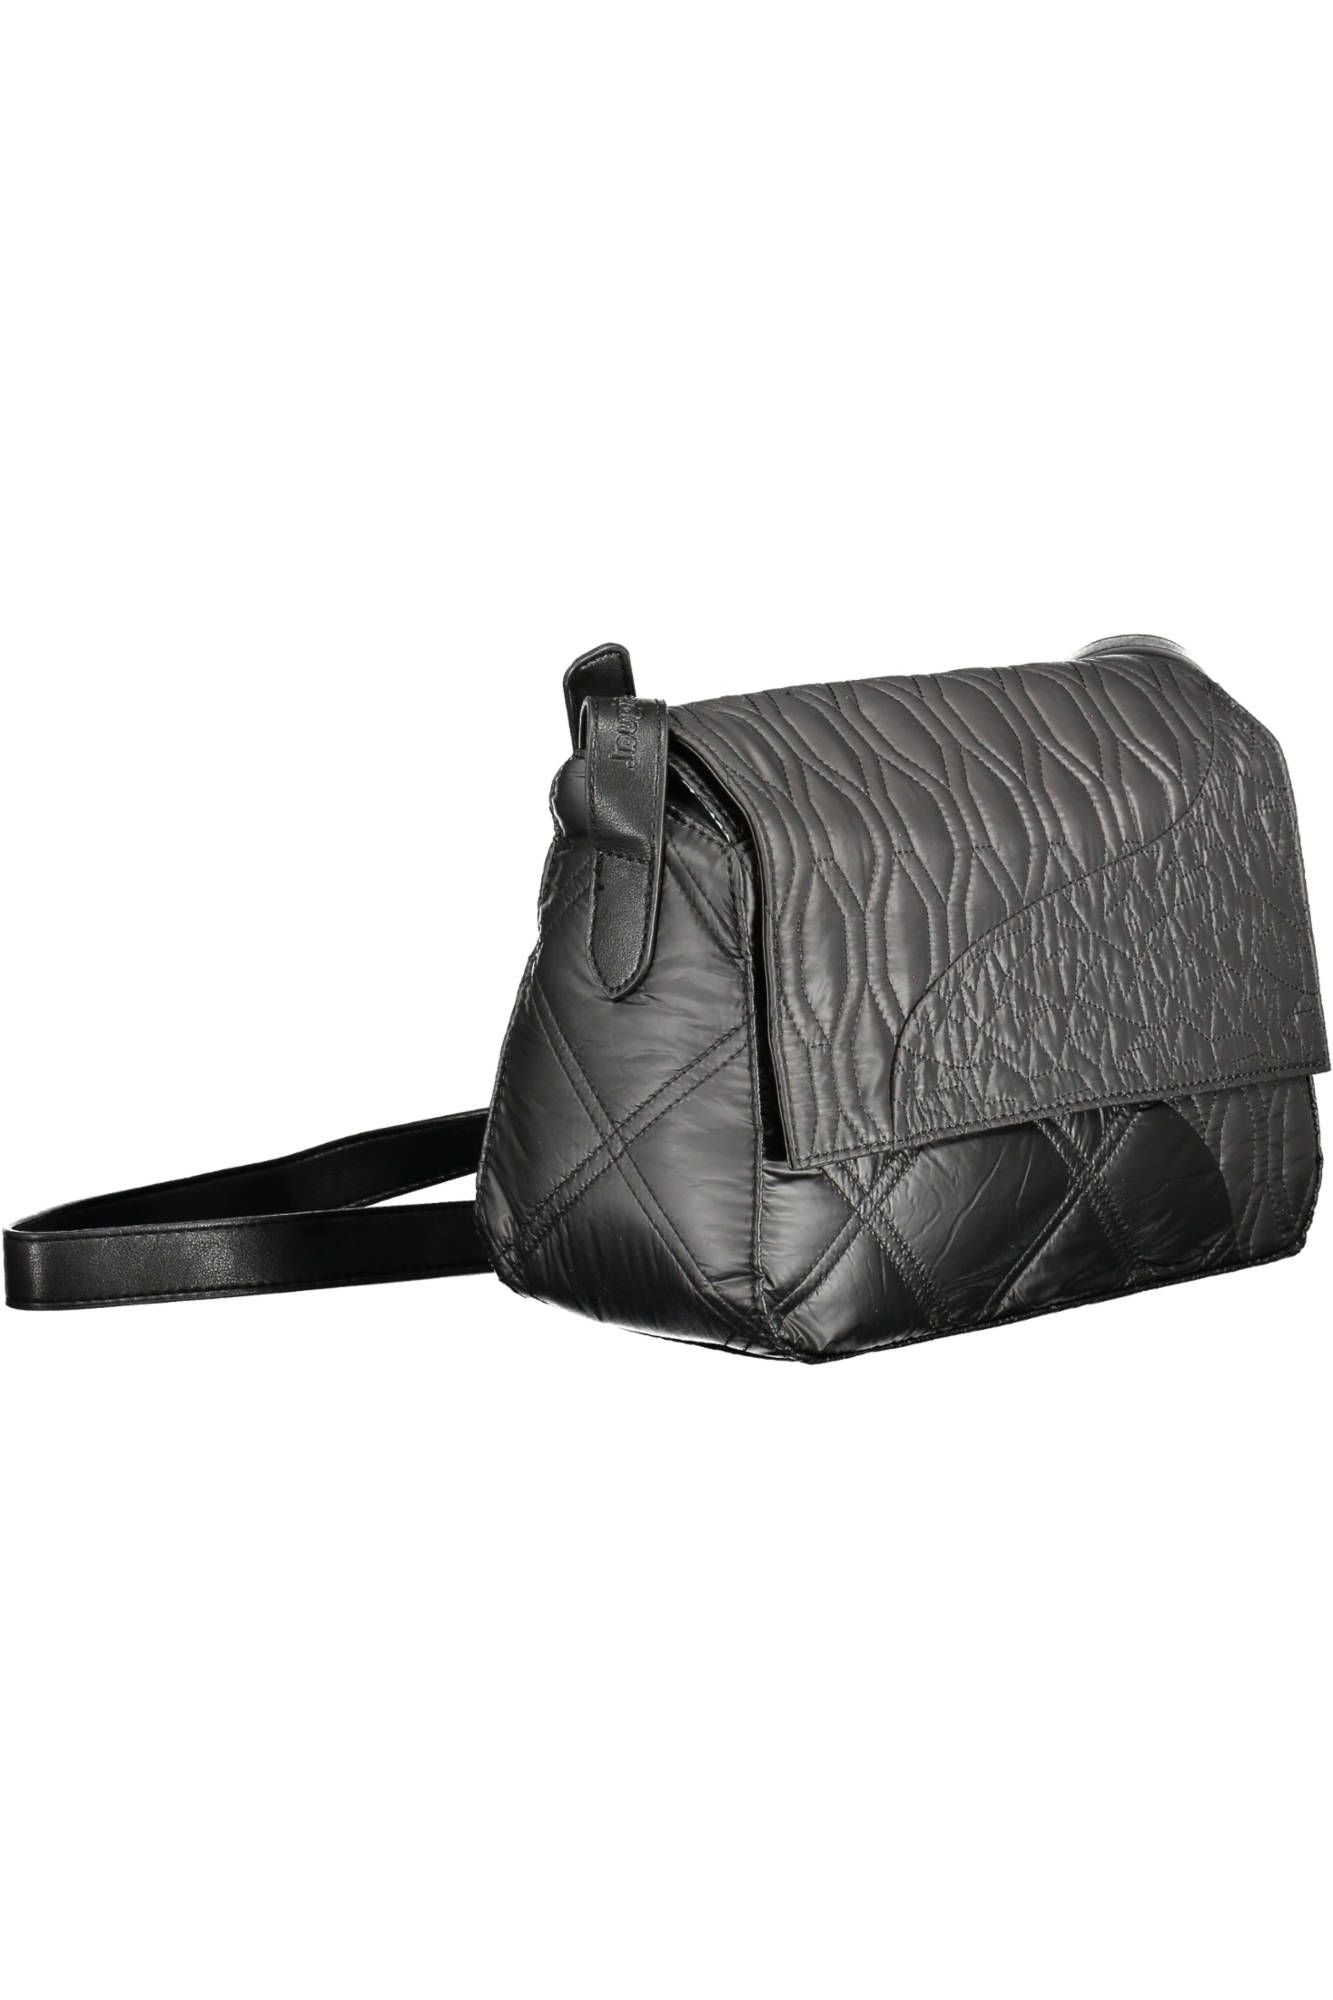 Desigual Chic Contrast Detail Black Shoulder Bag